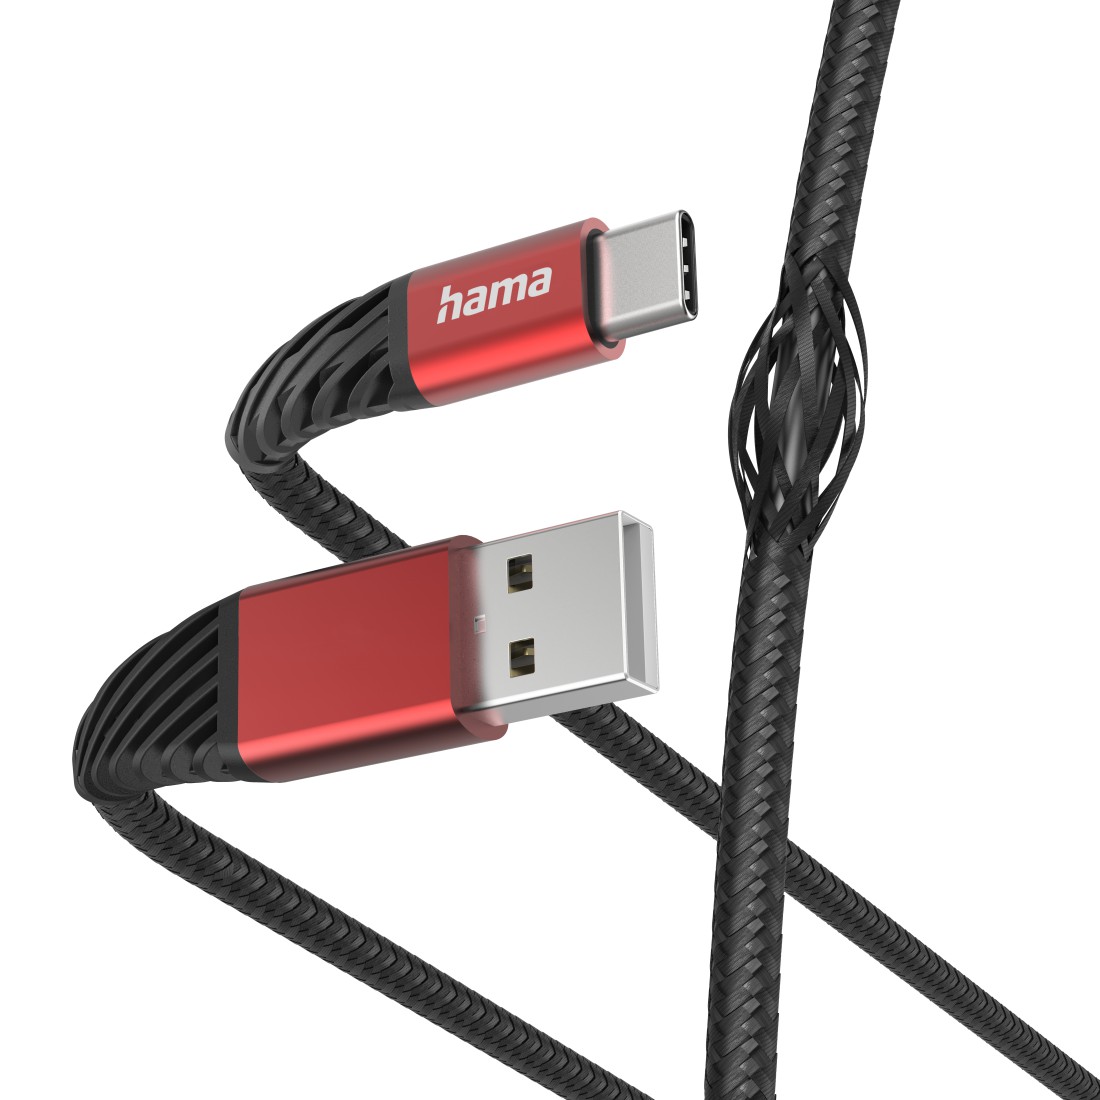 Hama Ladekabel Extreme, USB-A - USB-C, 1,5 m, Nylon, Schwarz/Rot